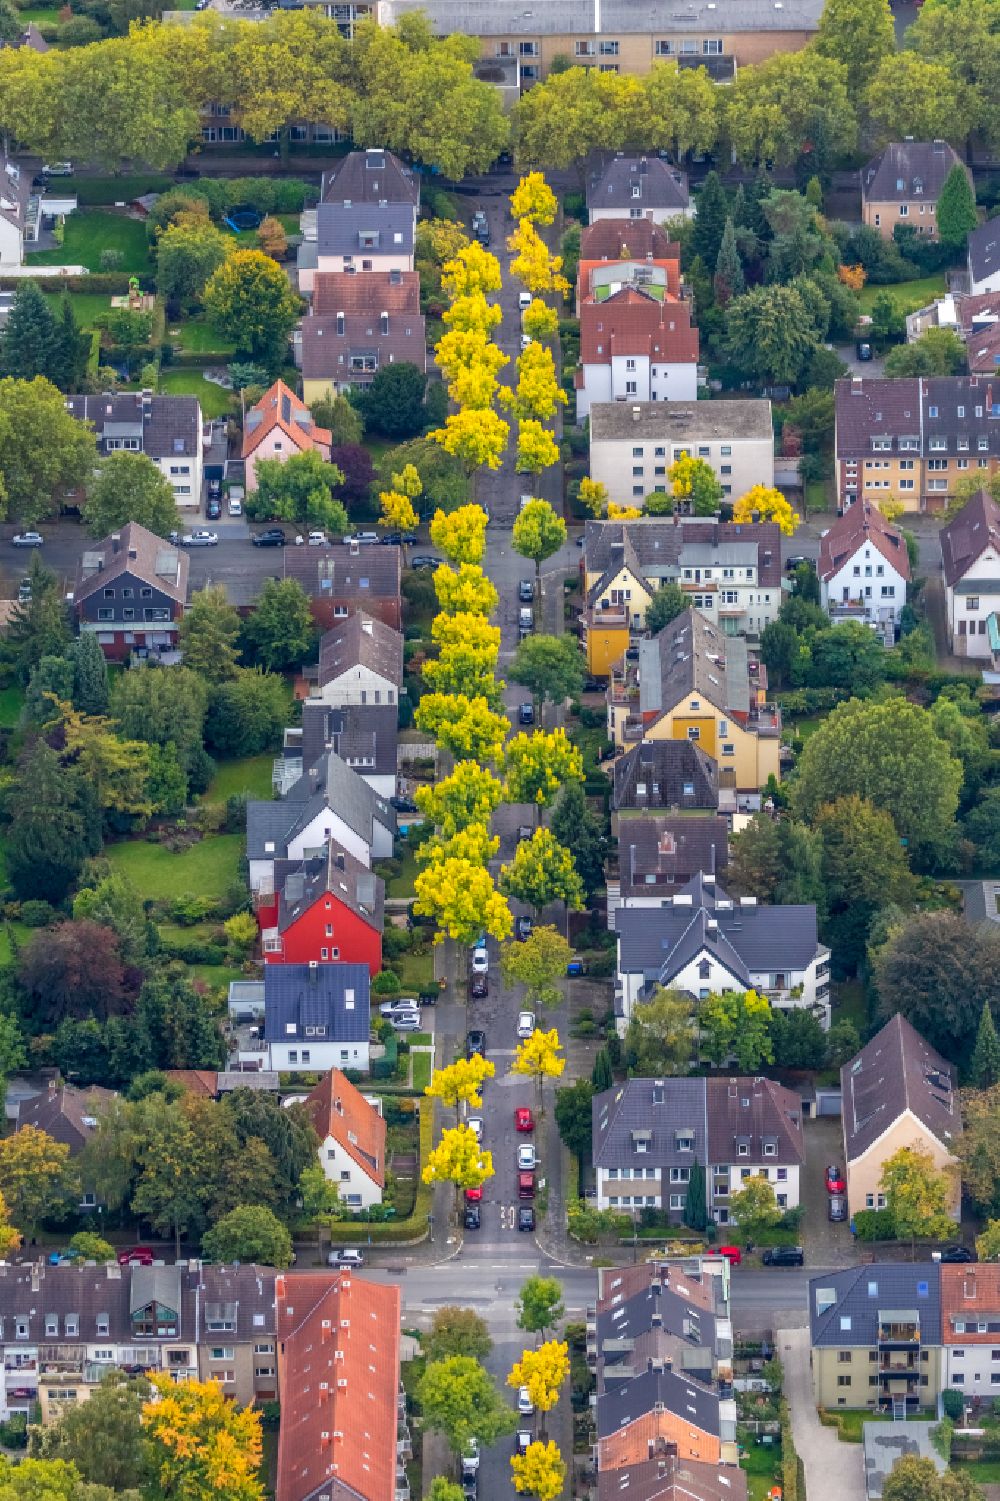 Wiemelhausen von oben - Wohngebiet - Mischbebauung der Mehr- und Einfamilienhaussiedlung in Wiemelhausen im Bundesland Nordrhein-Westfalen, Deutschland